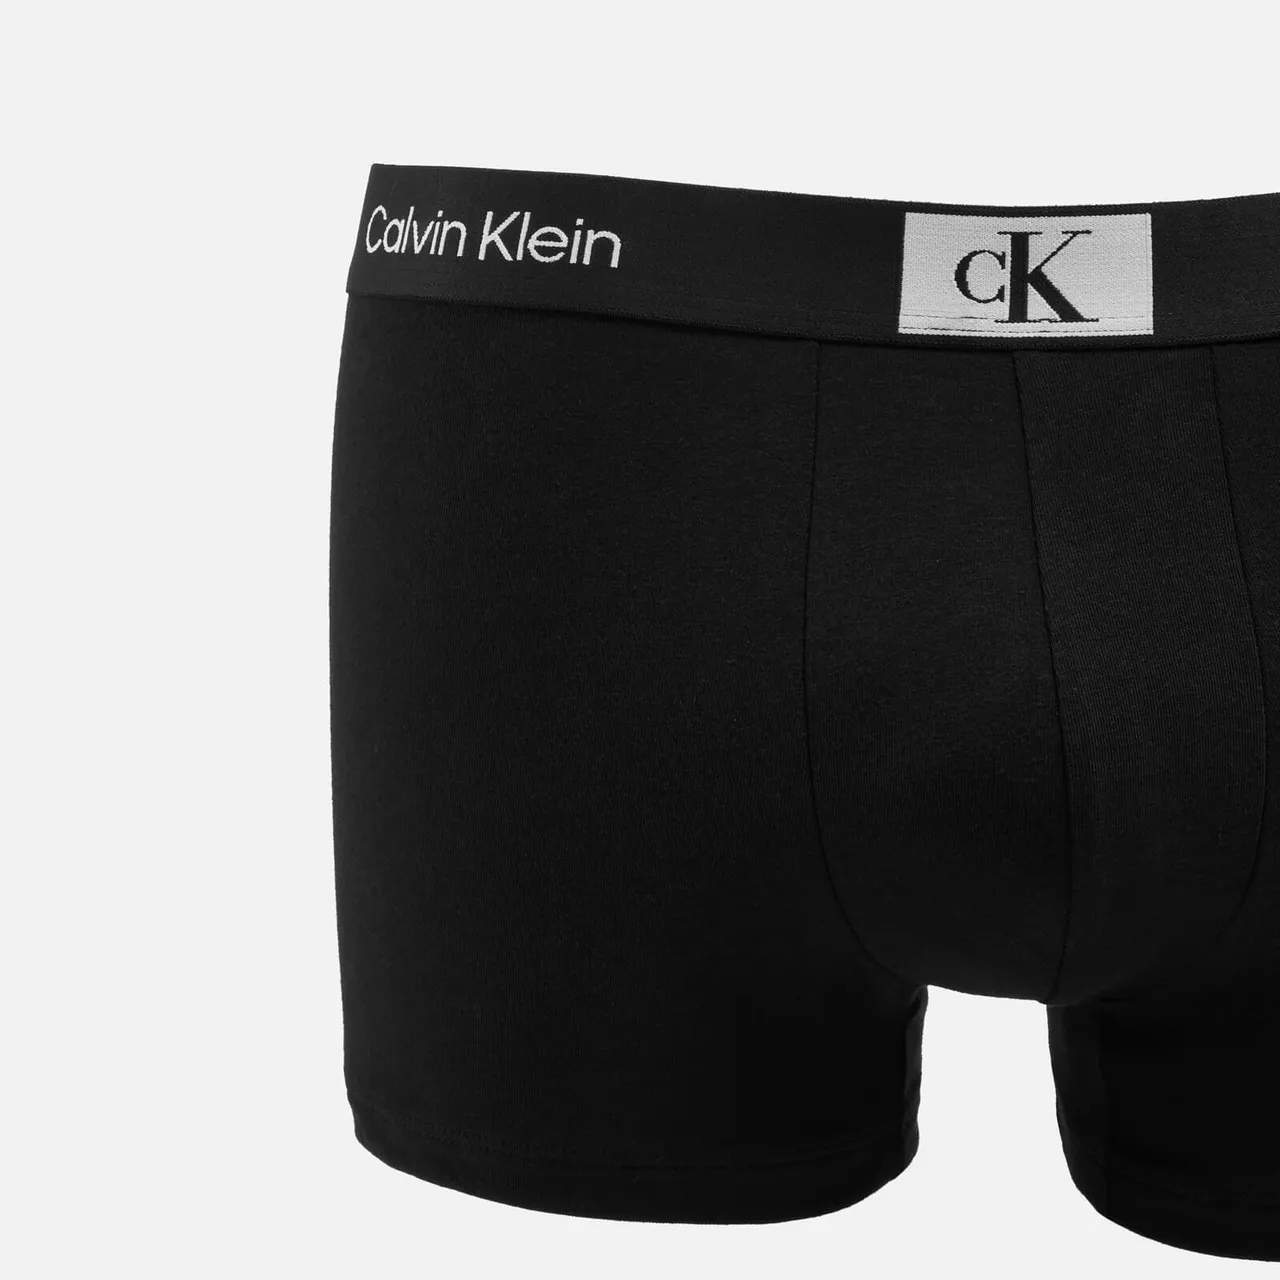 Calvin Klein Three-Pack Cotton Trunks